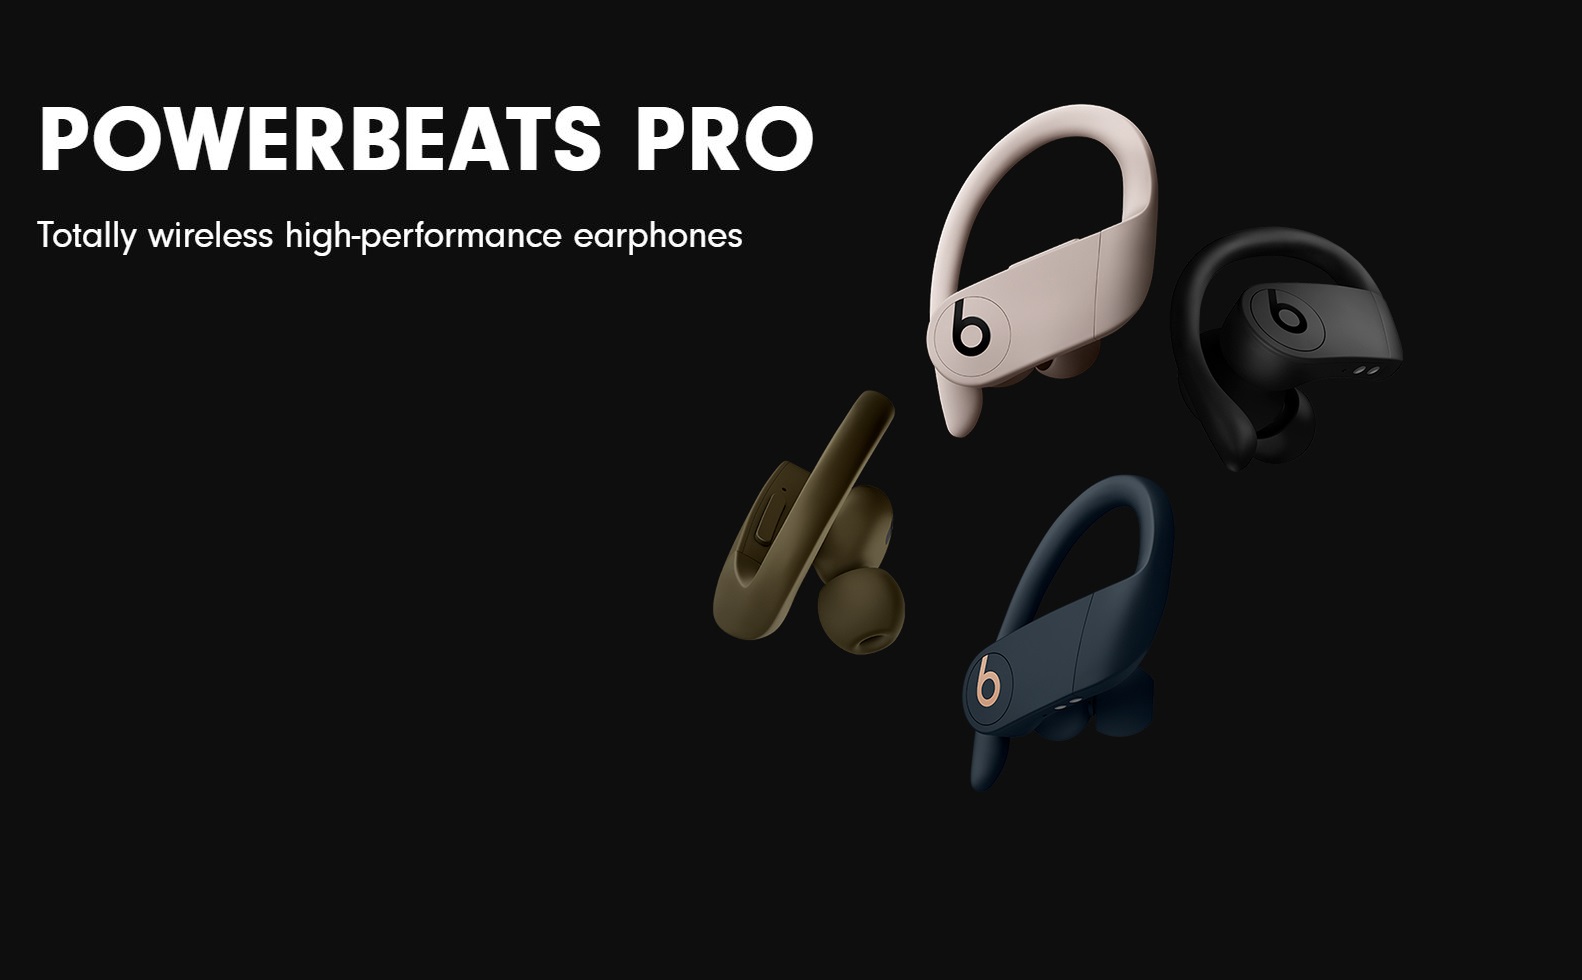 Powerbeats Pro chính thức ra mắt, trang bị chip H1, pin 9h, chống nước, giá 250$